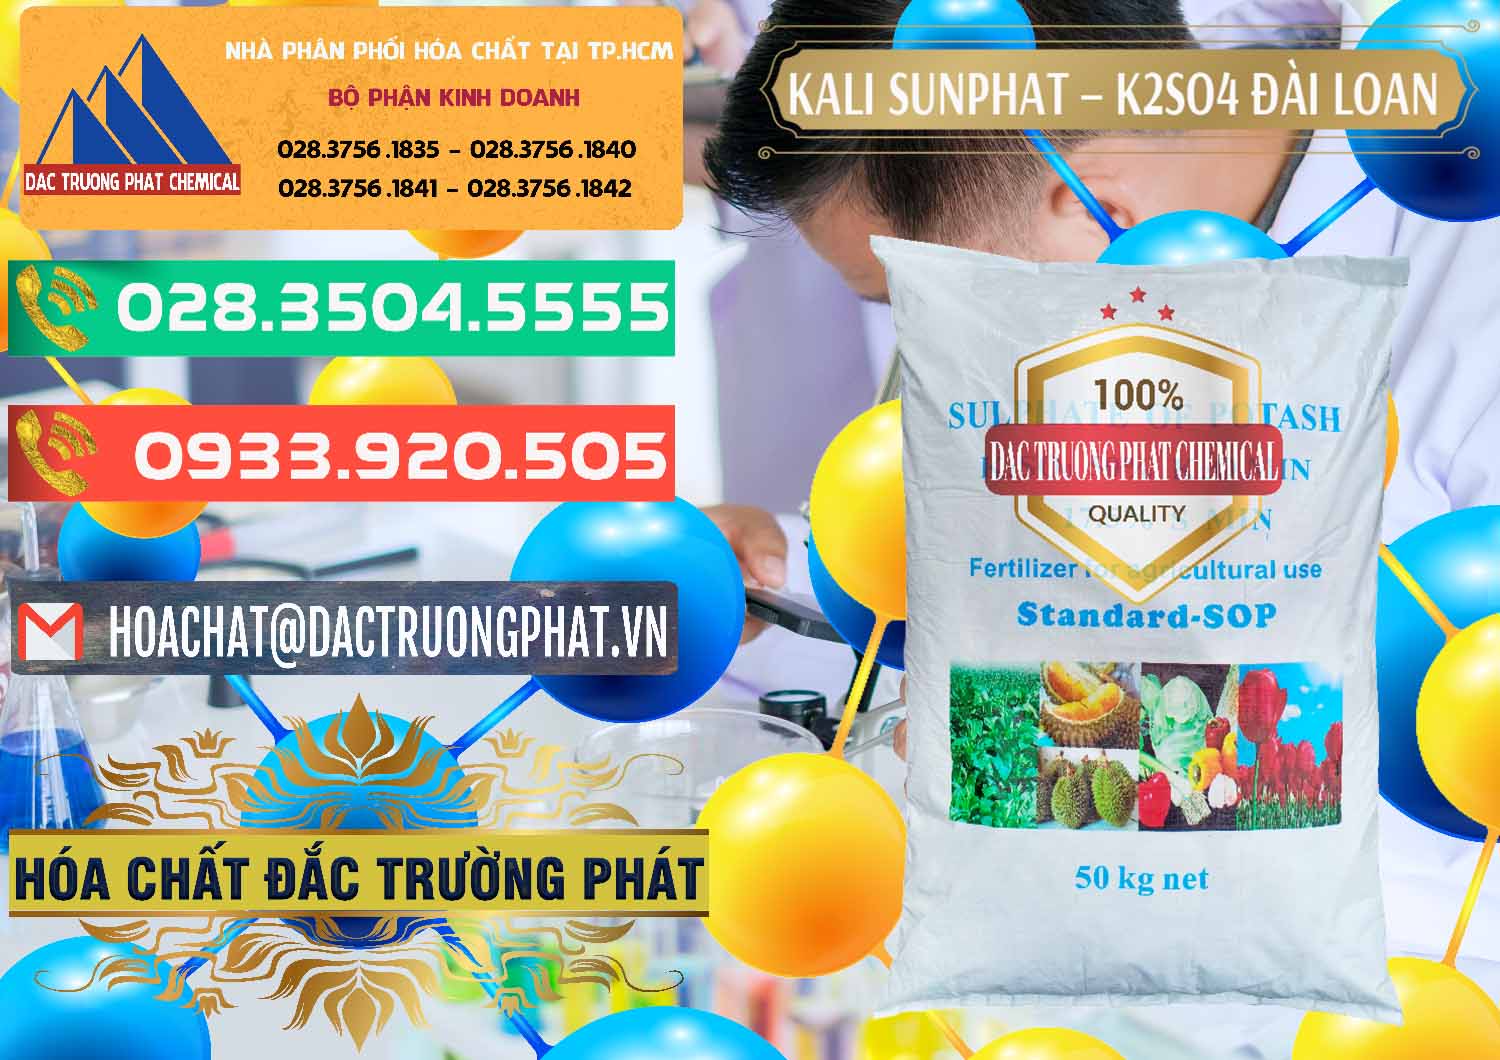 Công ty bán & phân phối Kali Sunphat – K2SO4 Đài Loan Taiwan - 0084 - Cty cung cấp & kinh doanh hóa chất tại TP.HCM - congtyhoachat.com.vn